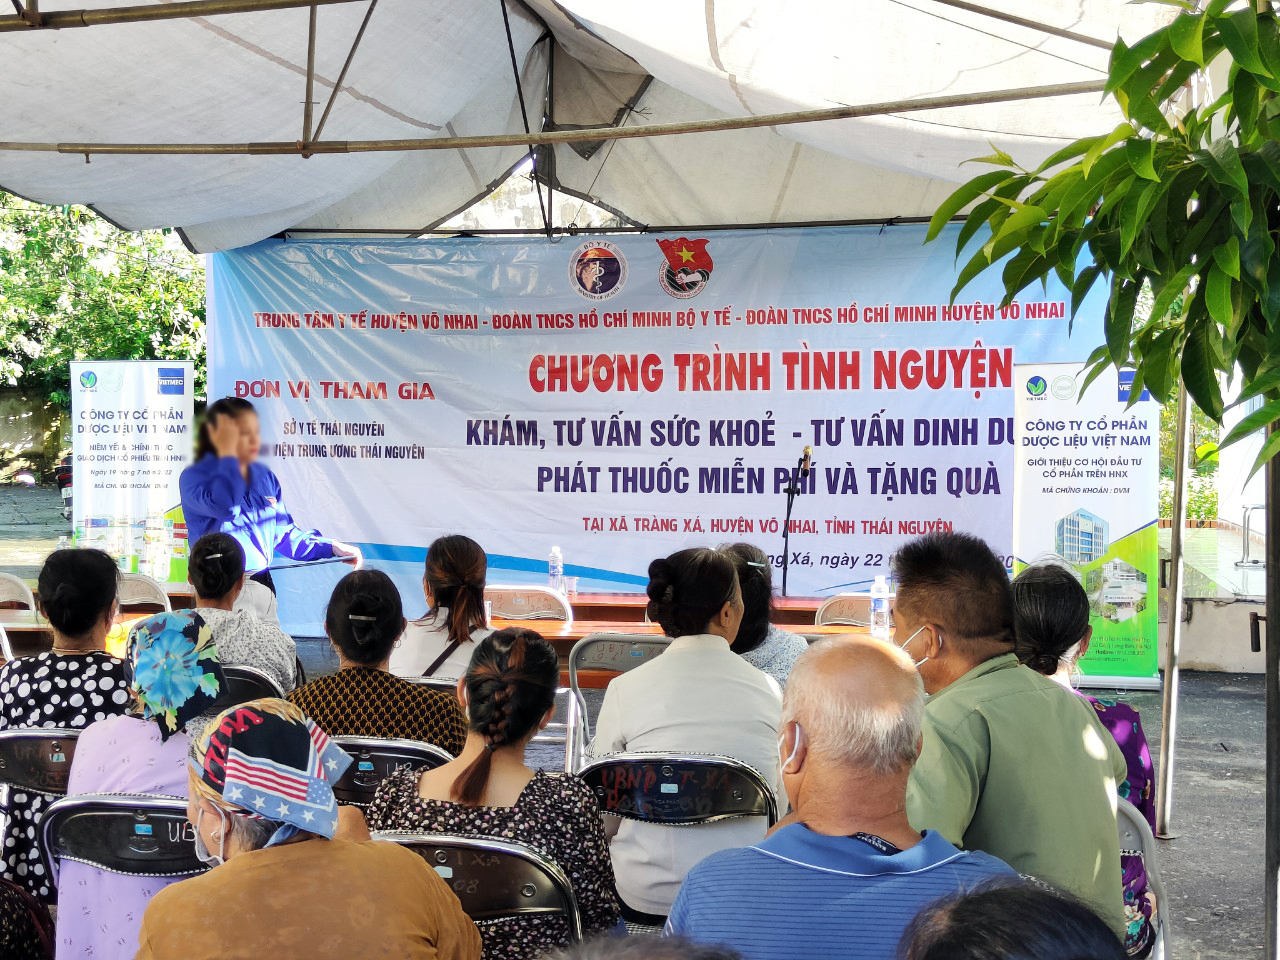 VIETMEC ủng hộ Chương trình tình nguyện do Đoàn TNCS Hồ Chí Minh Bộ Y tế tổ chức tại Thái Nguyên và Hòa Bình